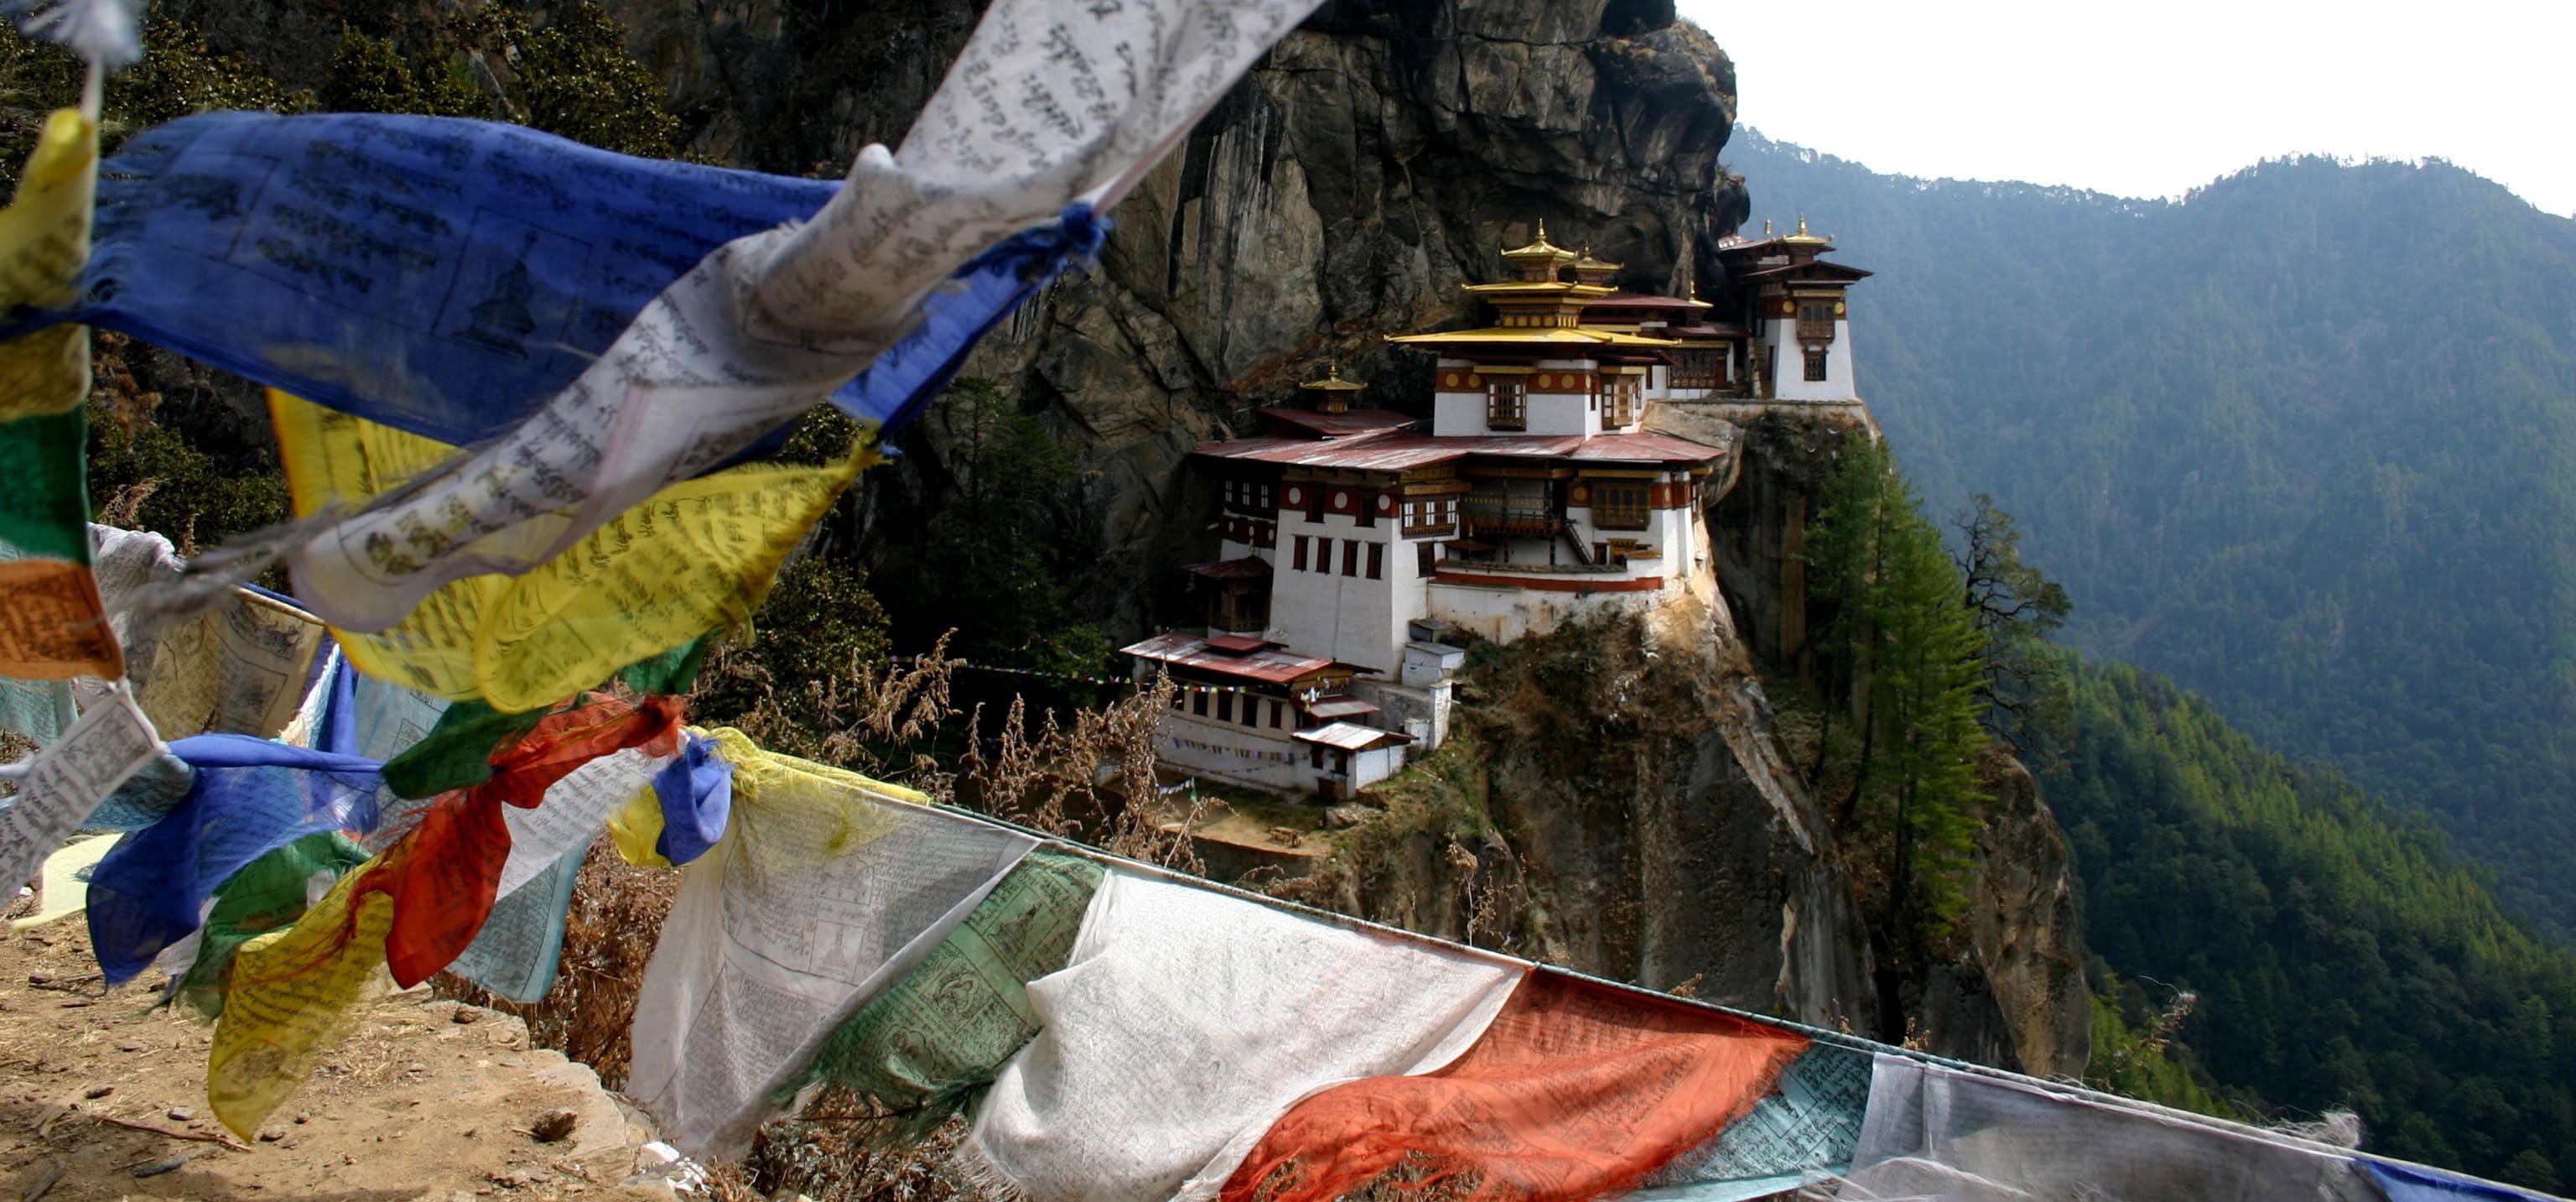 Taktsang_Monastery_(Tiger_s_Nest)_1-1639134752.jpeg